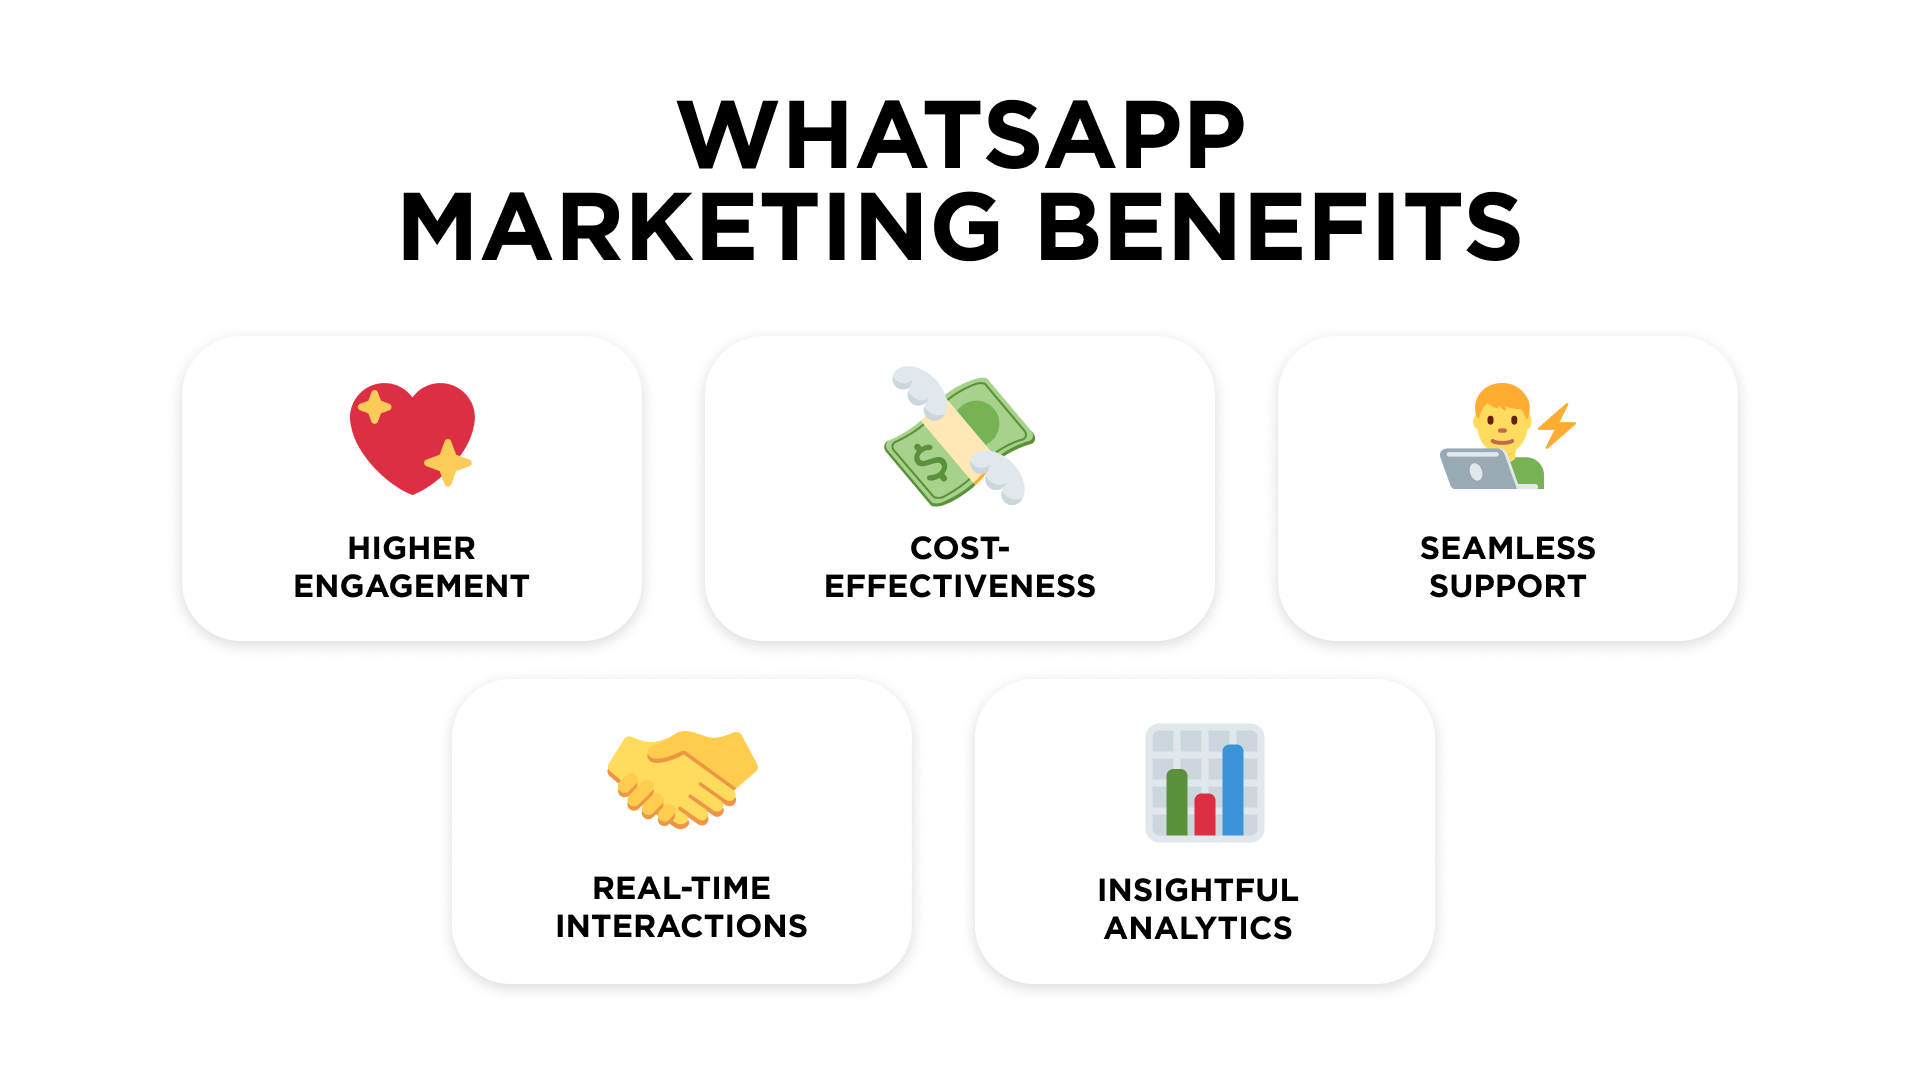 WhatsApp Marketing Benefits